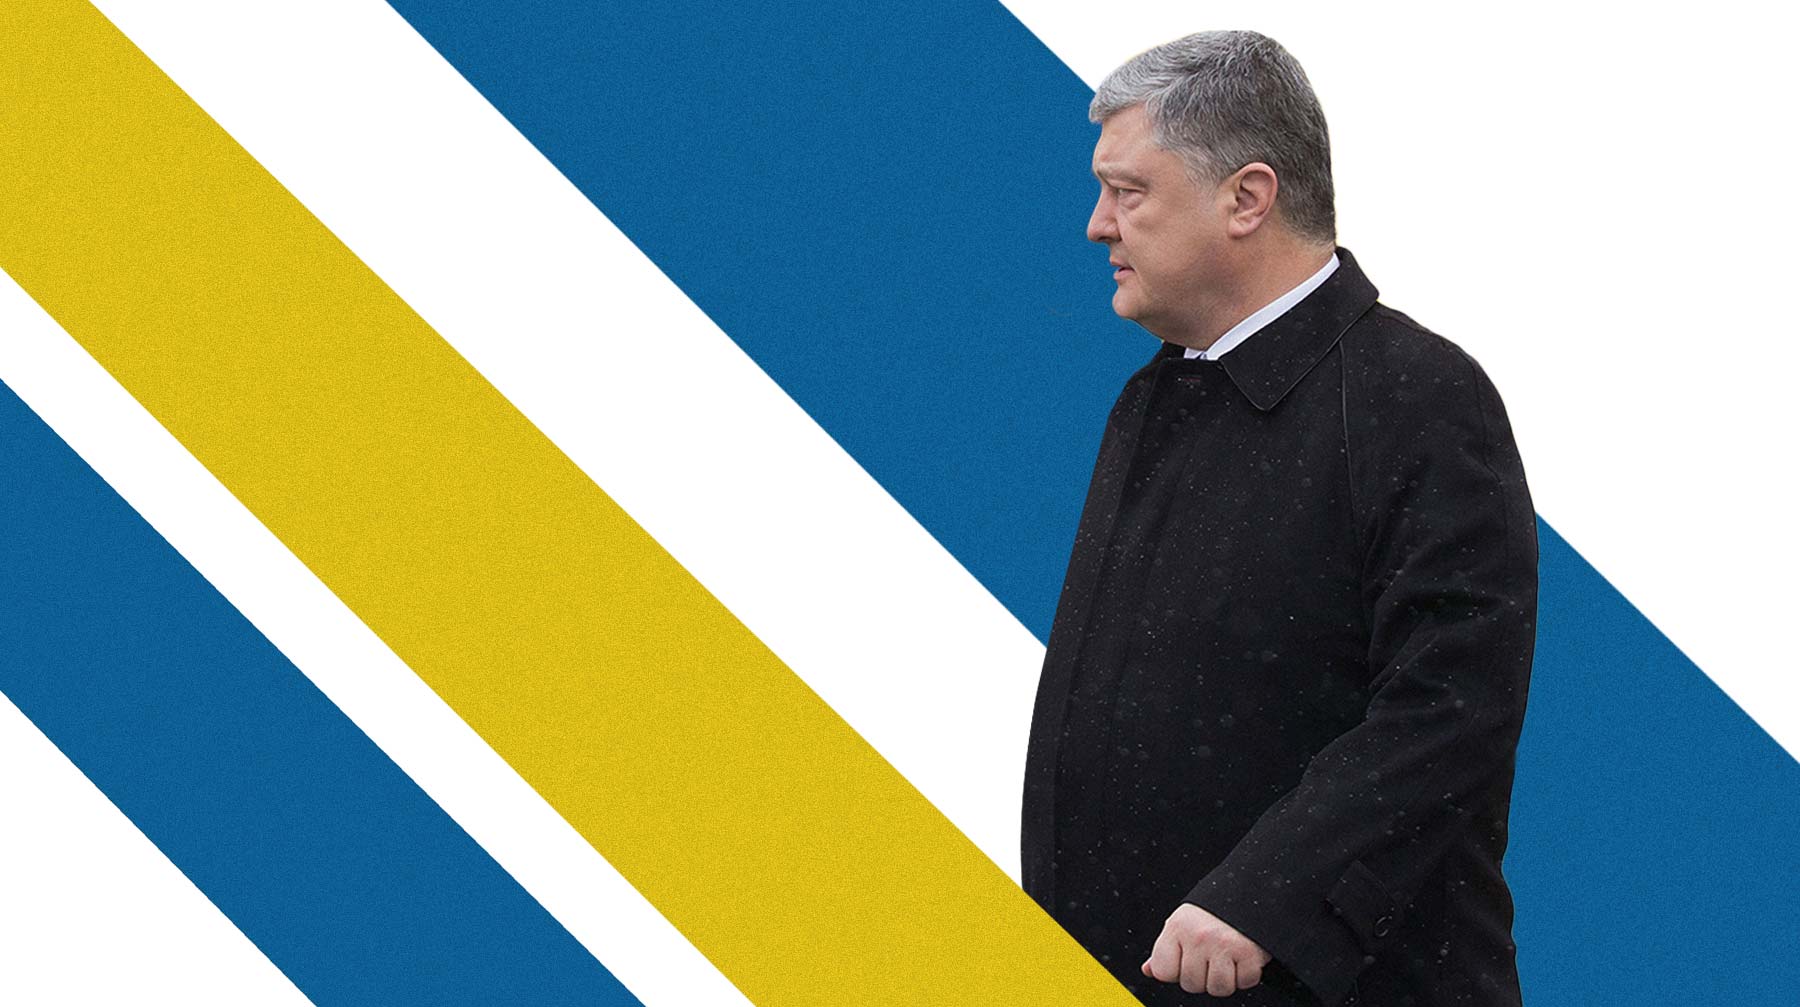 Следующему президенту страны предстоит искоренить в стране клептократию и увеличить рост экономики Президент Украины Пётр Порошенко